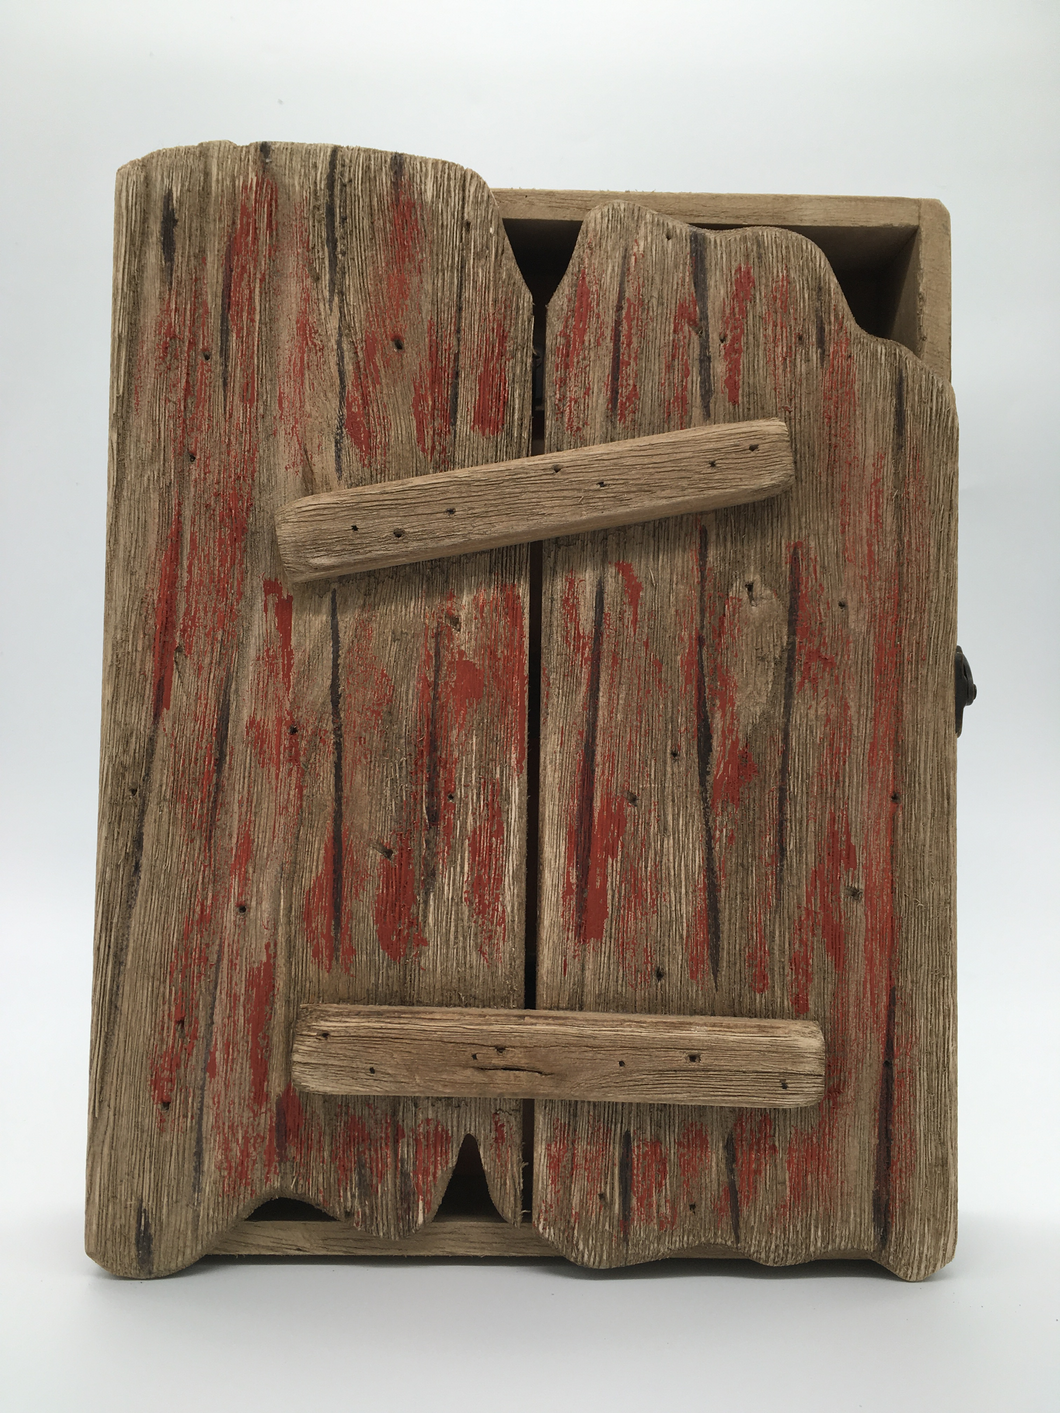 Wooden Key box